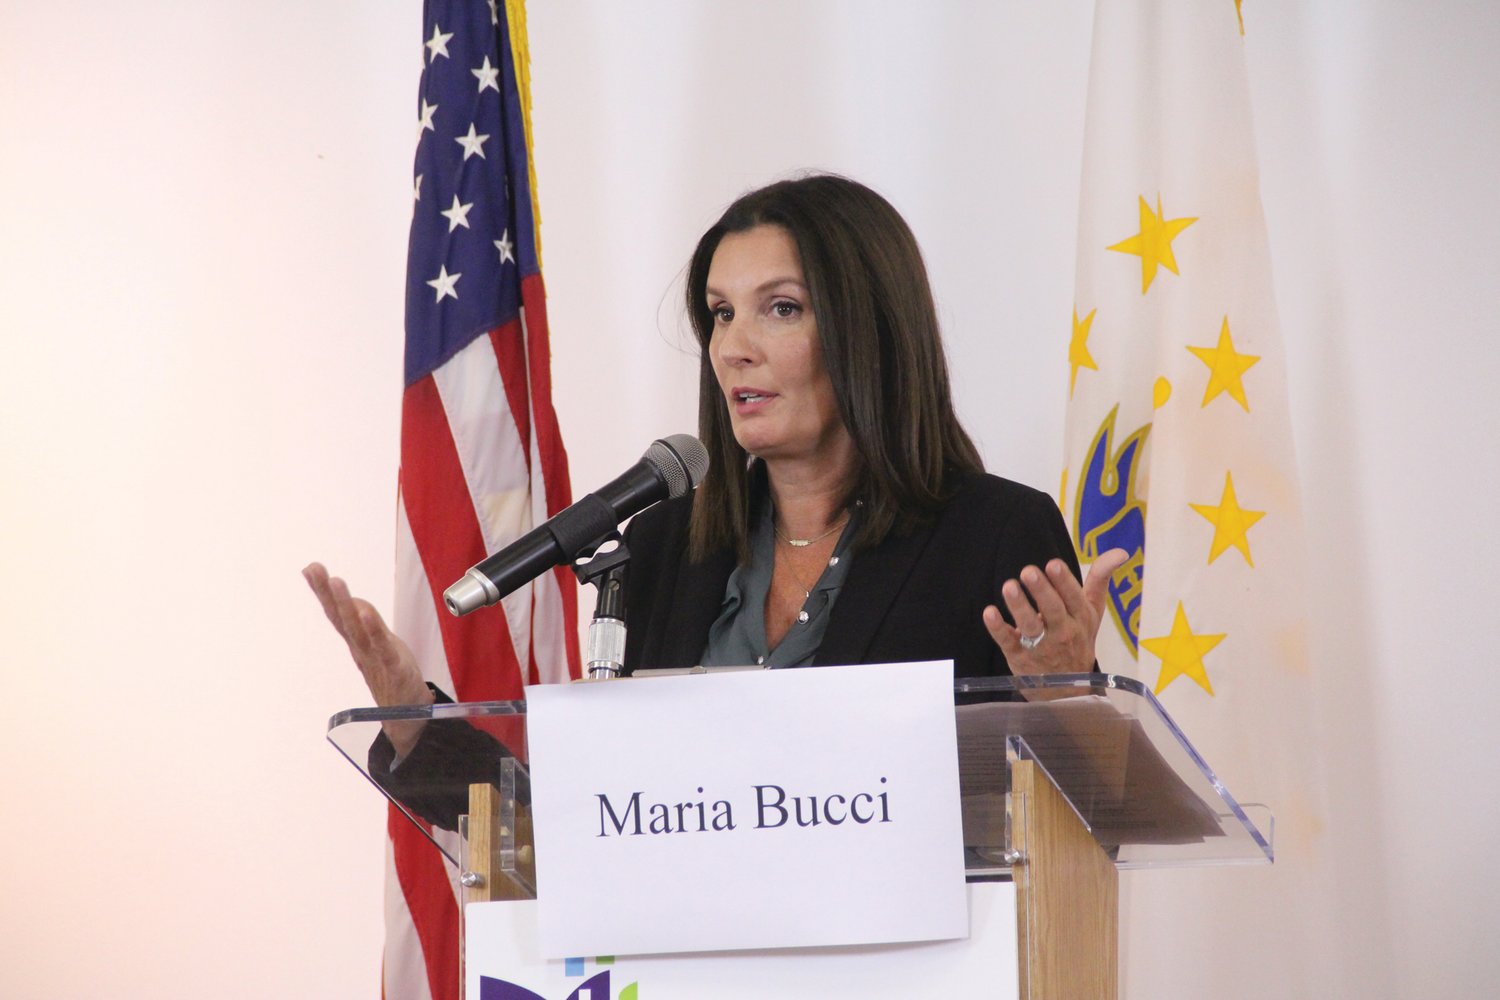 Maria Bucci